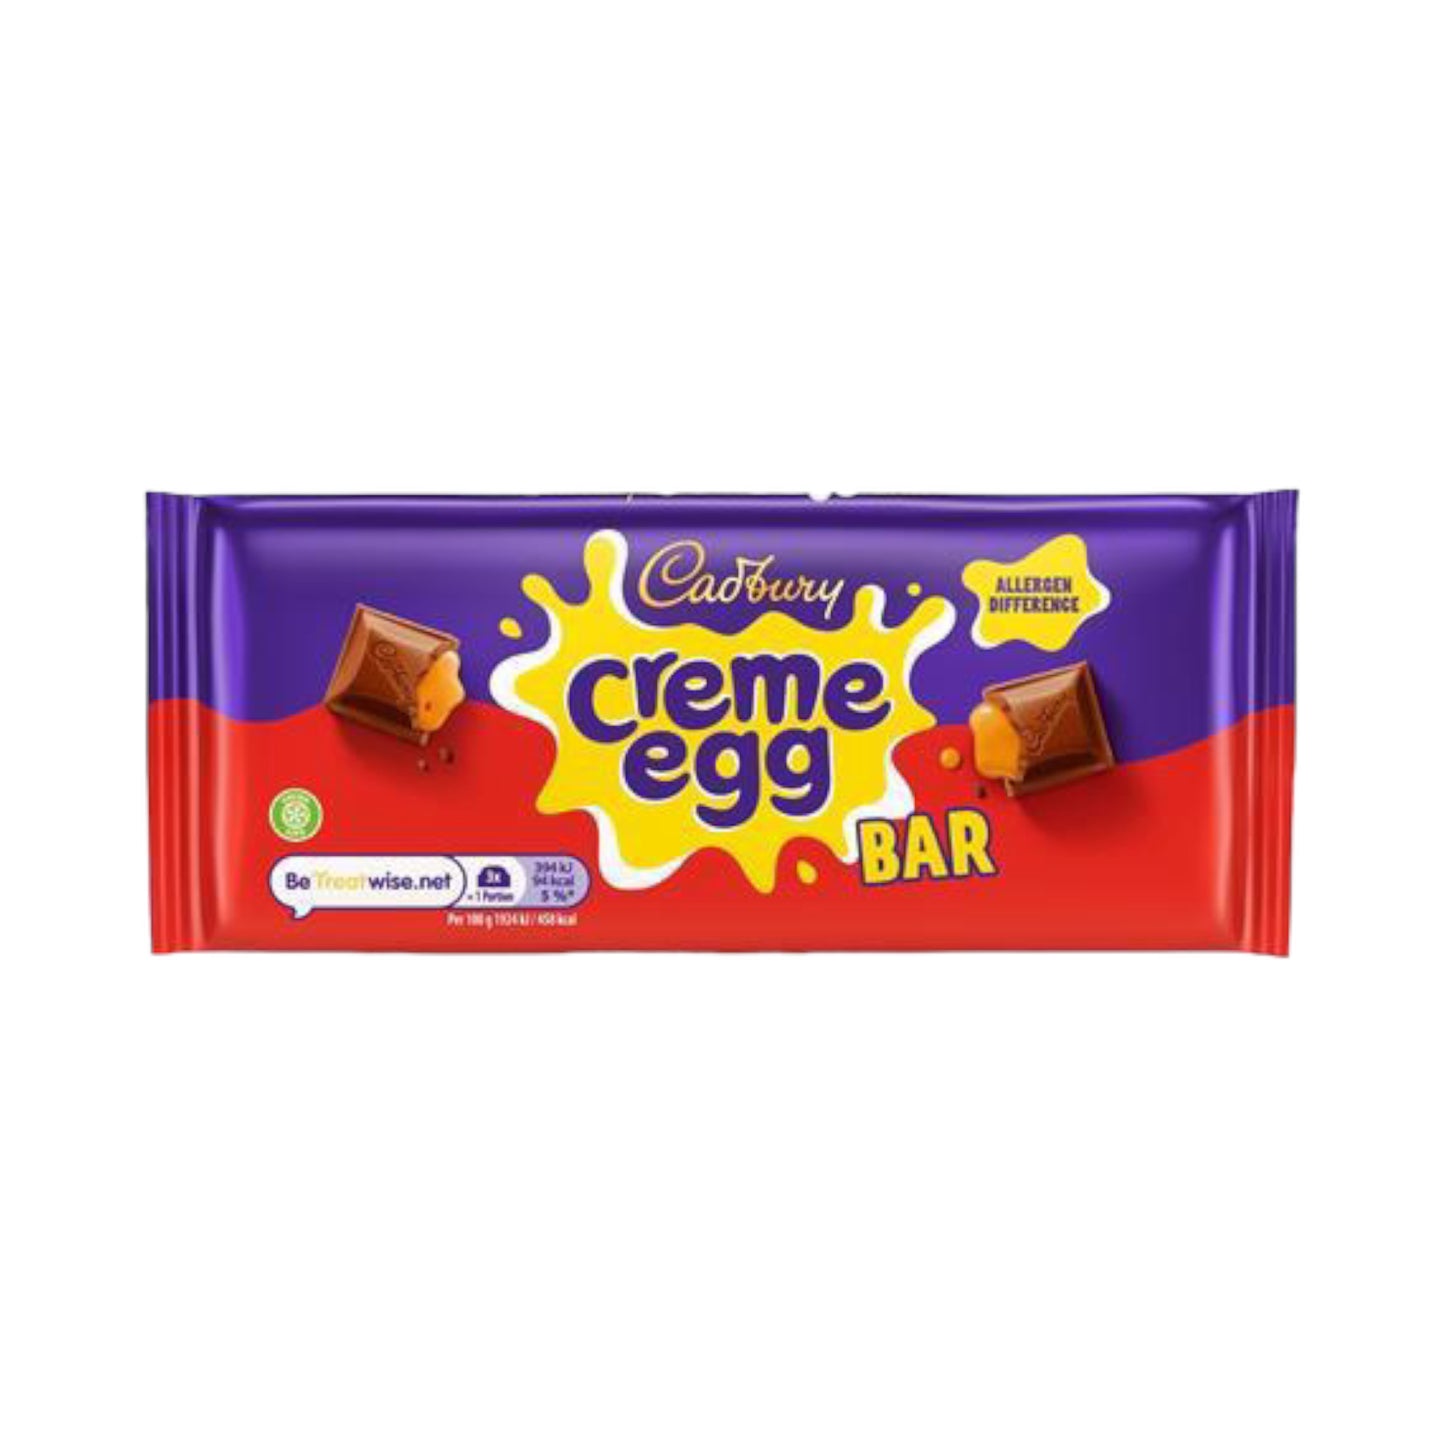 Cadbury Creme Egg Bar - 123g